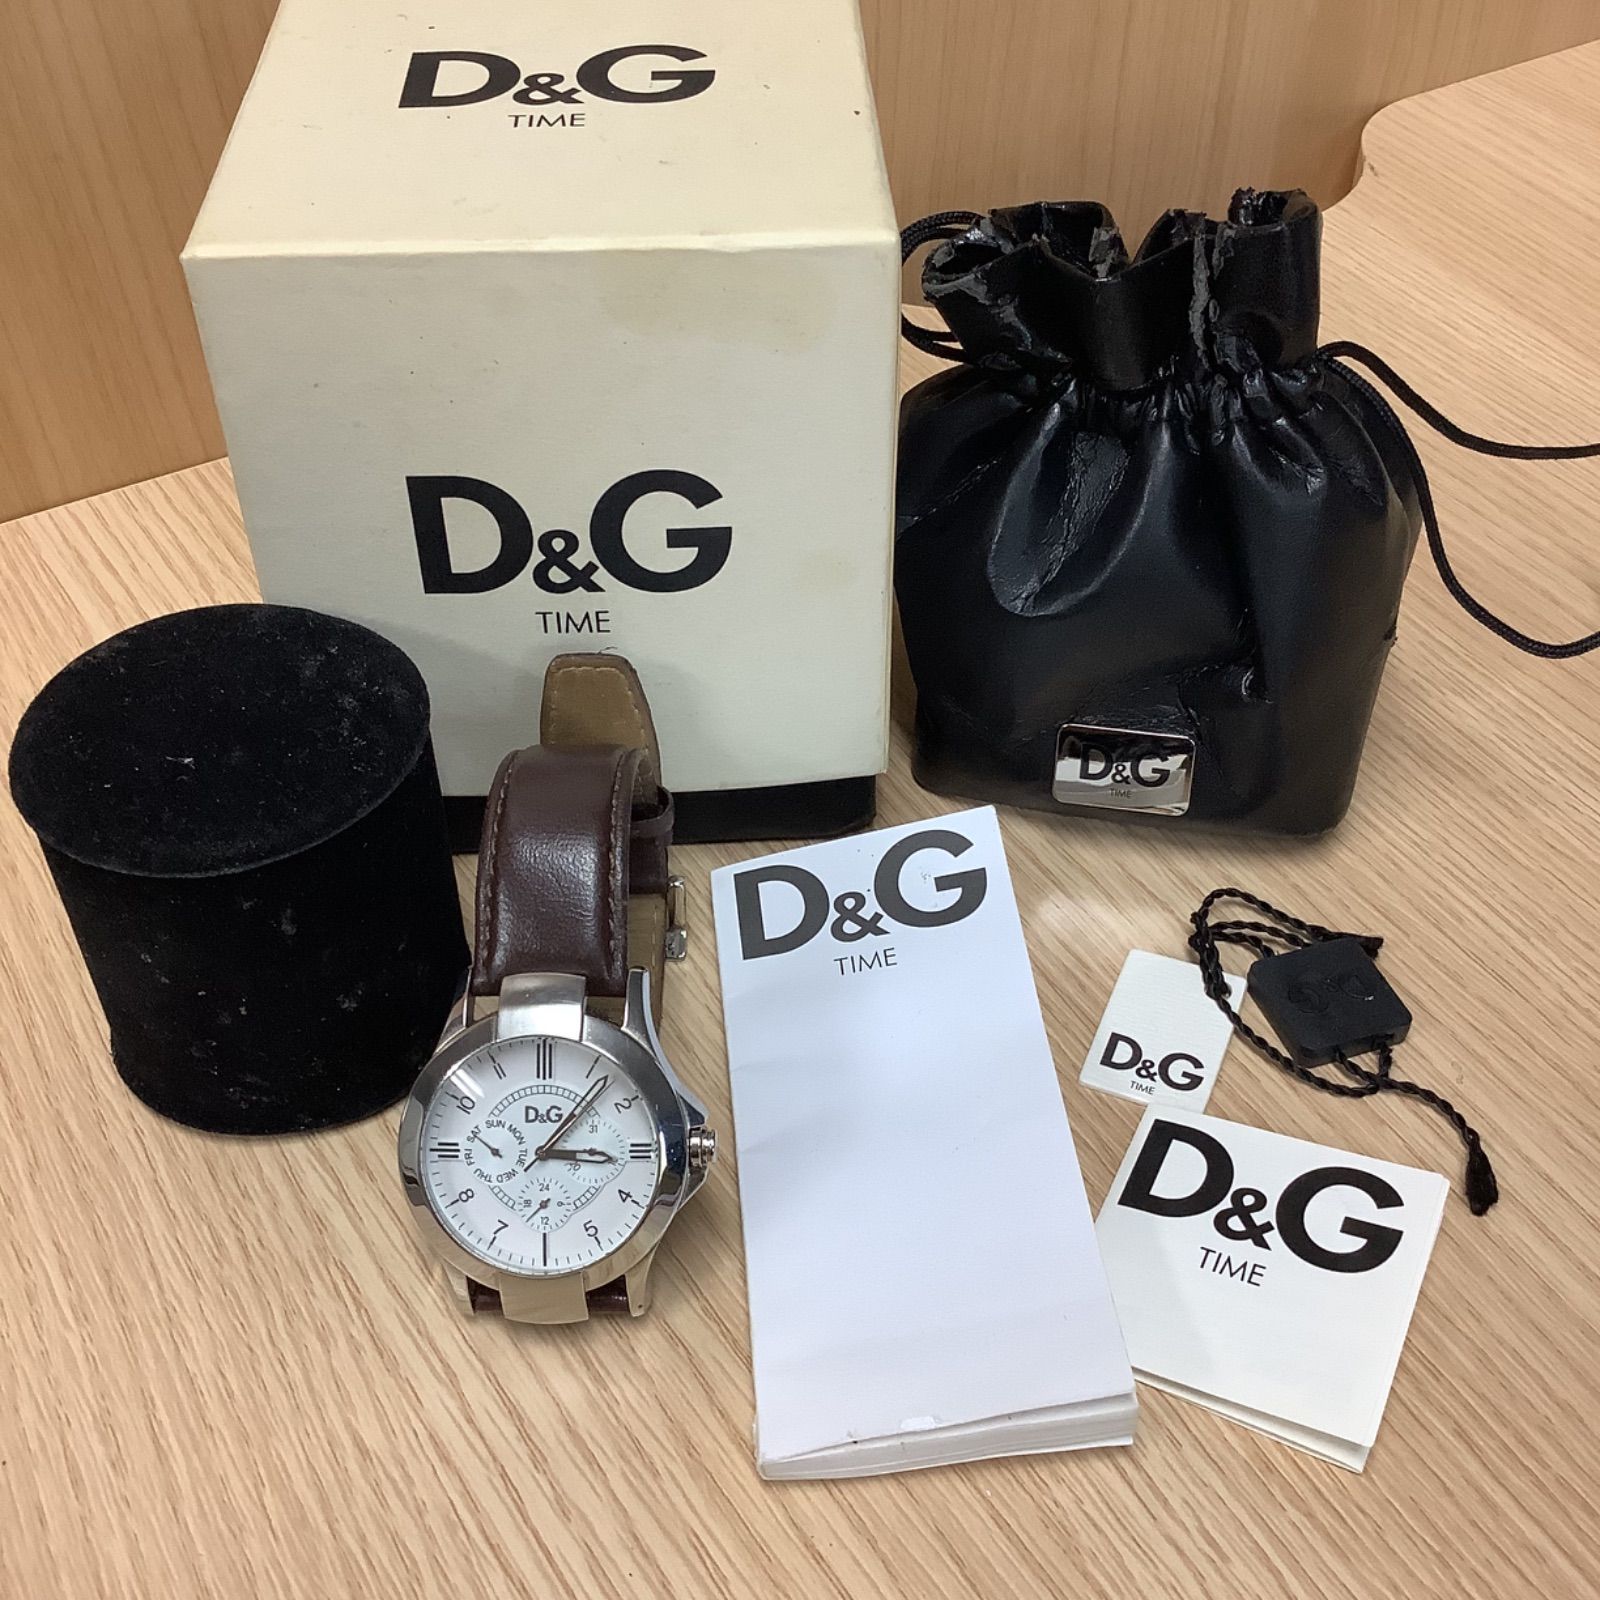 ドルチェ&ガッバーナ D&G TIME 腕時計 - エコポート お値引き交渉不可